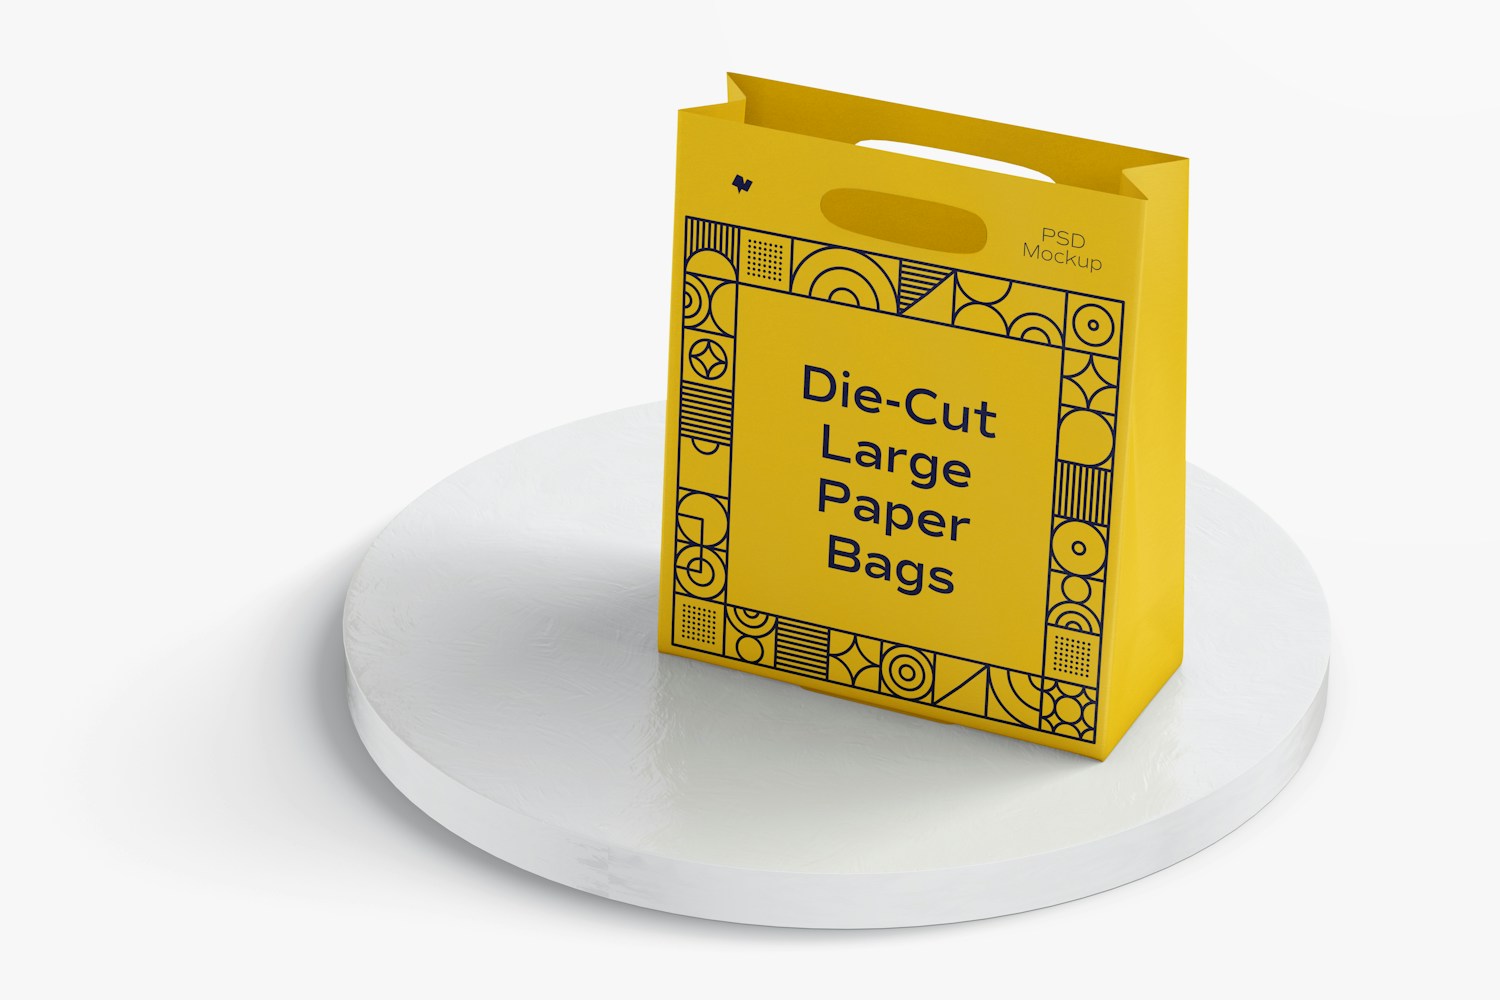 Die-Cut Large Paper Bag Mockup, Perspective